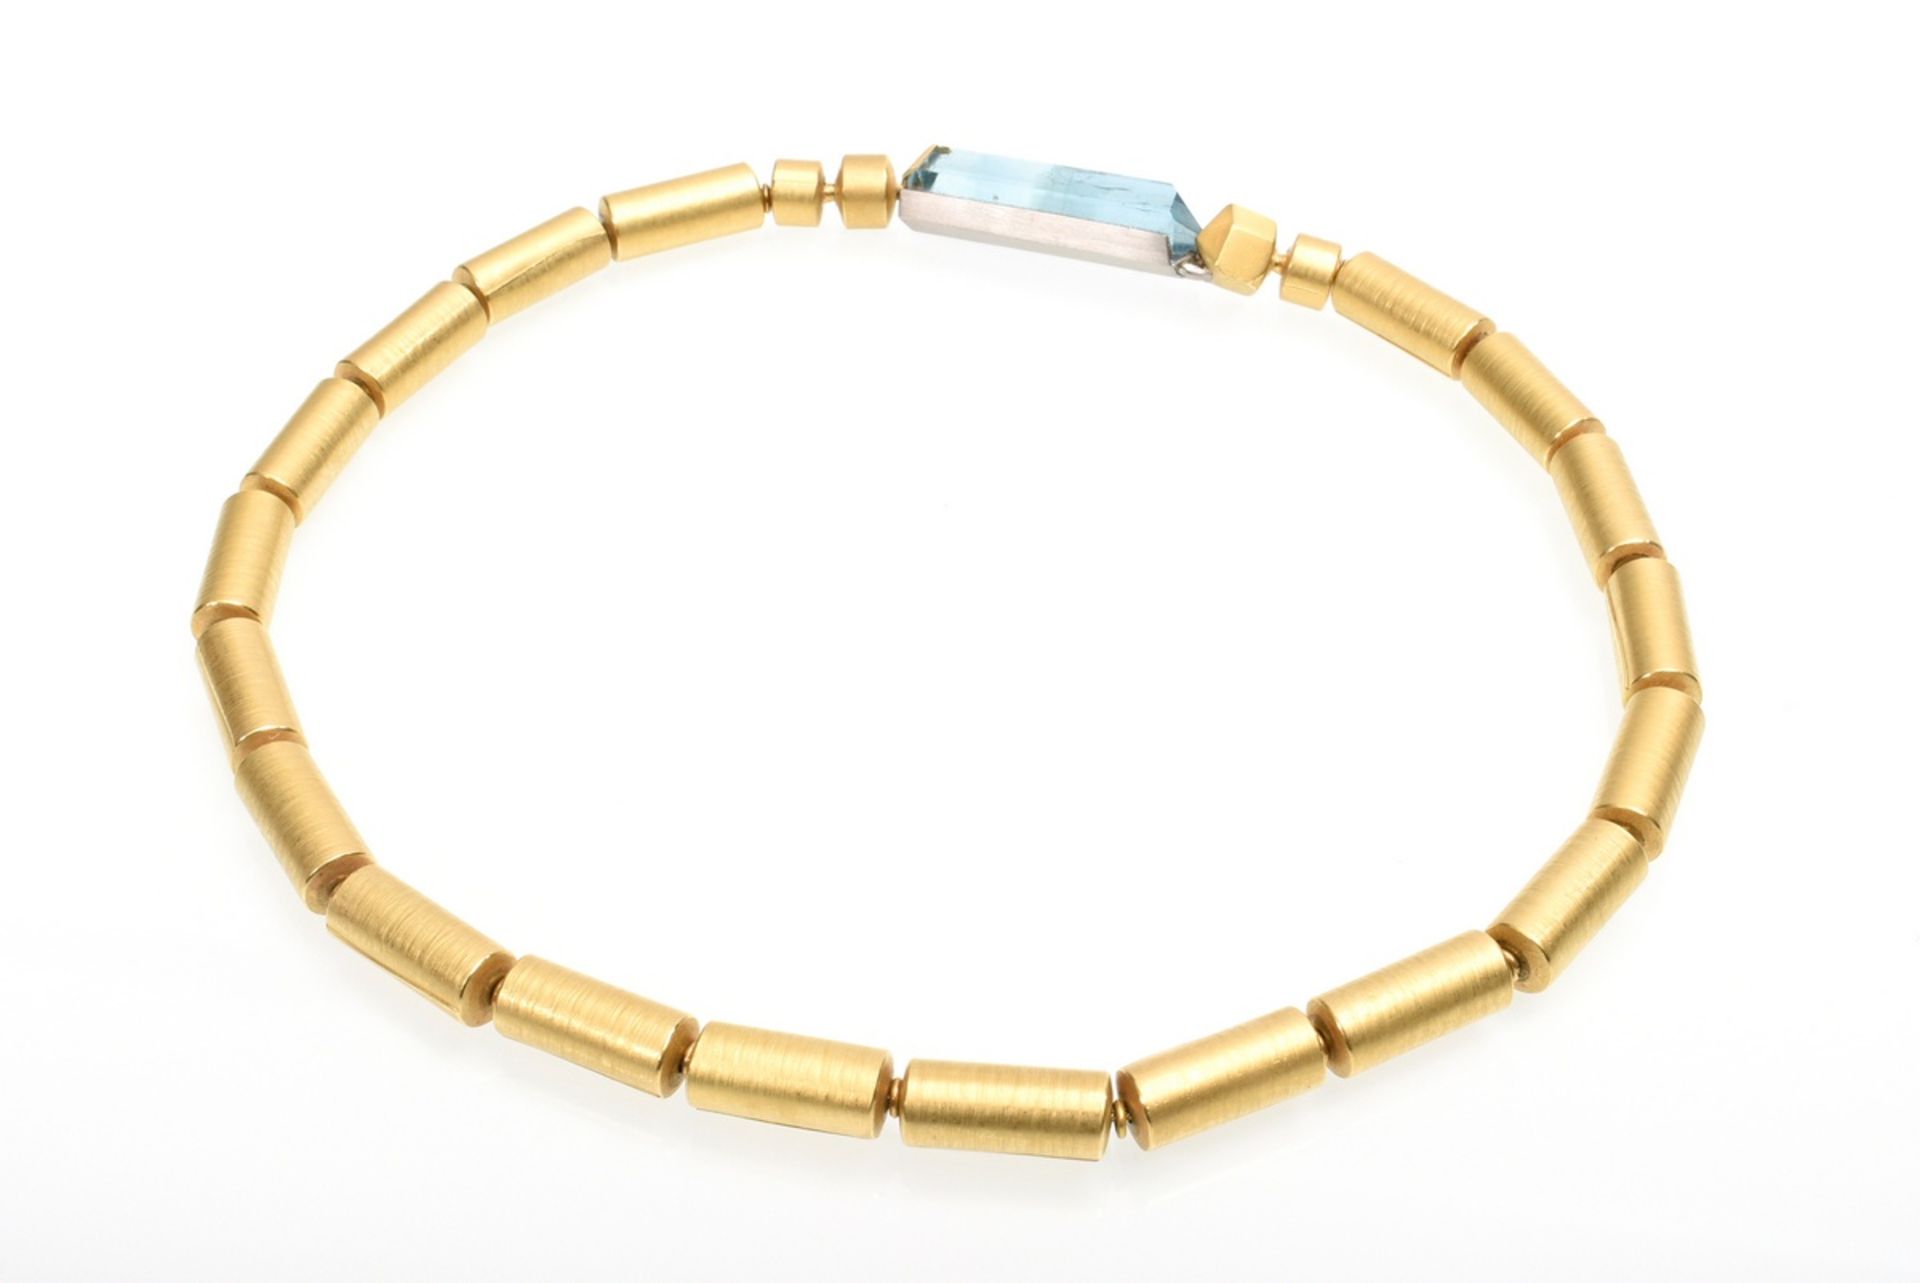 4 pieces avant-garde GG 900 tube necklace (68,8g, l. 44cm) with 3 different clasps: rutile quartz p - Image 5 of 11